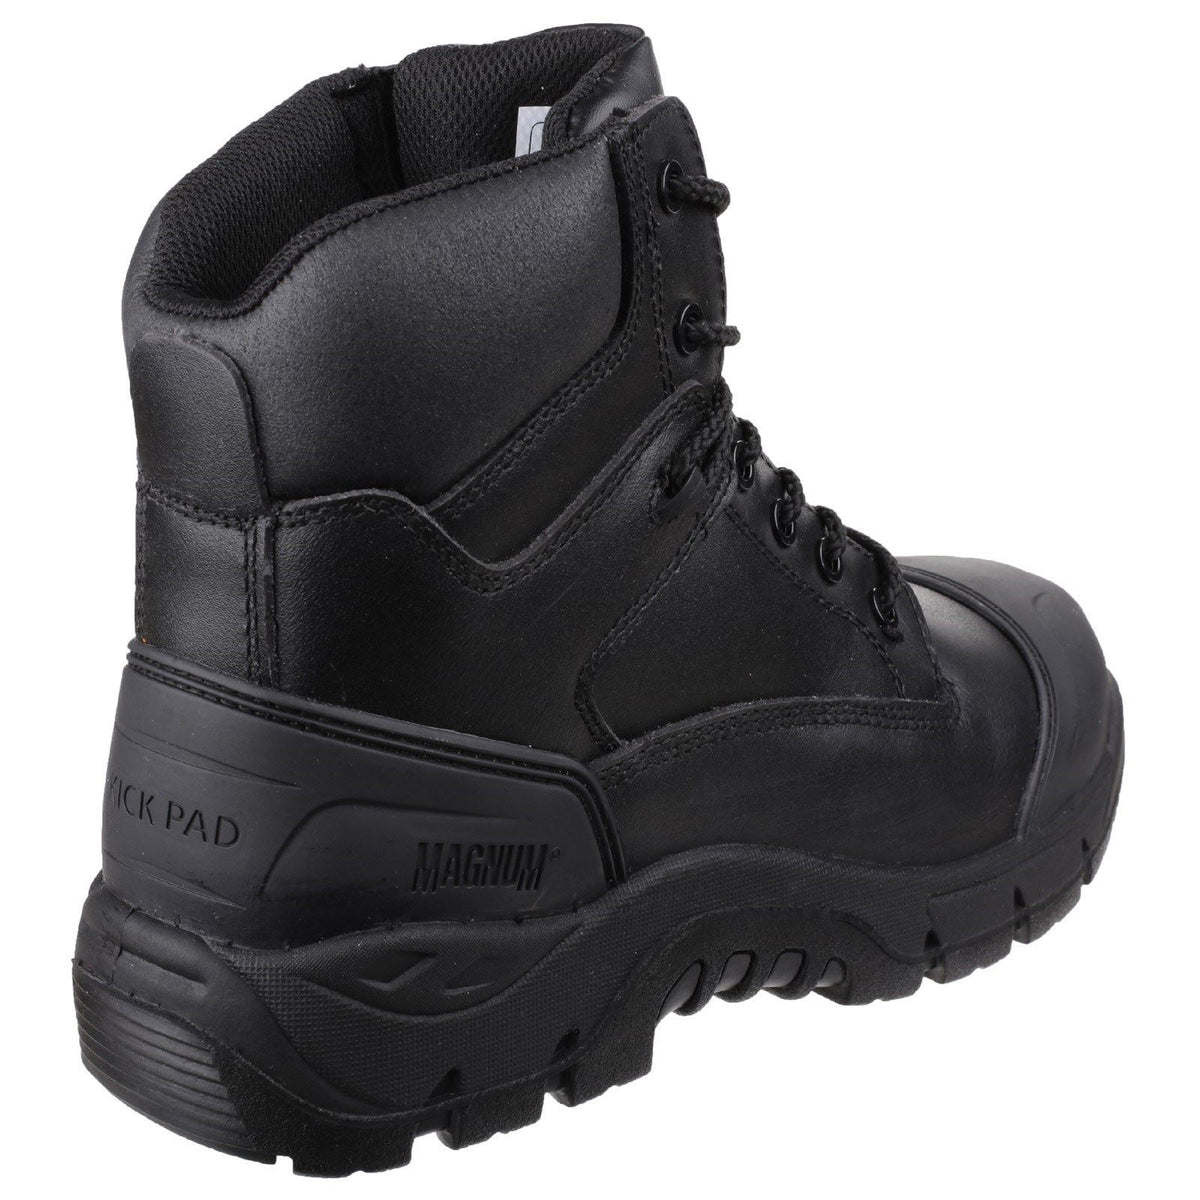 Magnum Roadmaster Uniform Safety Boots